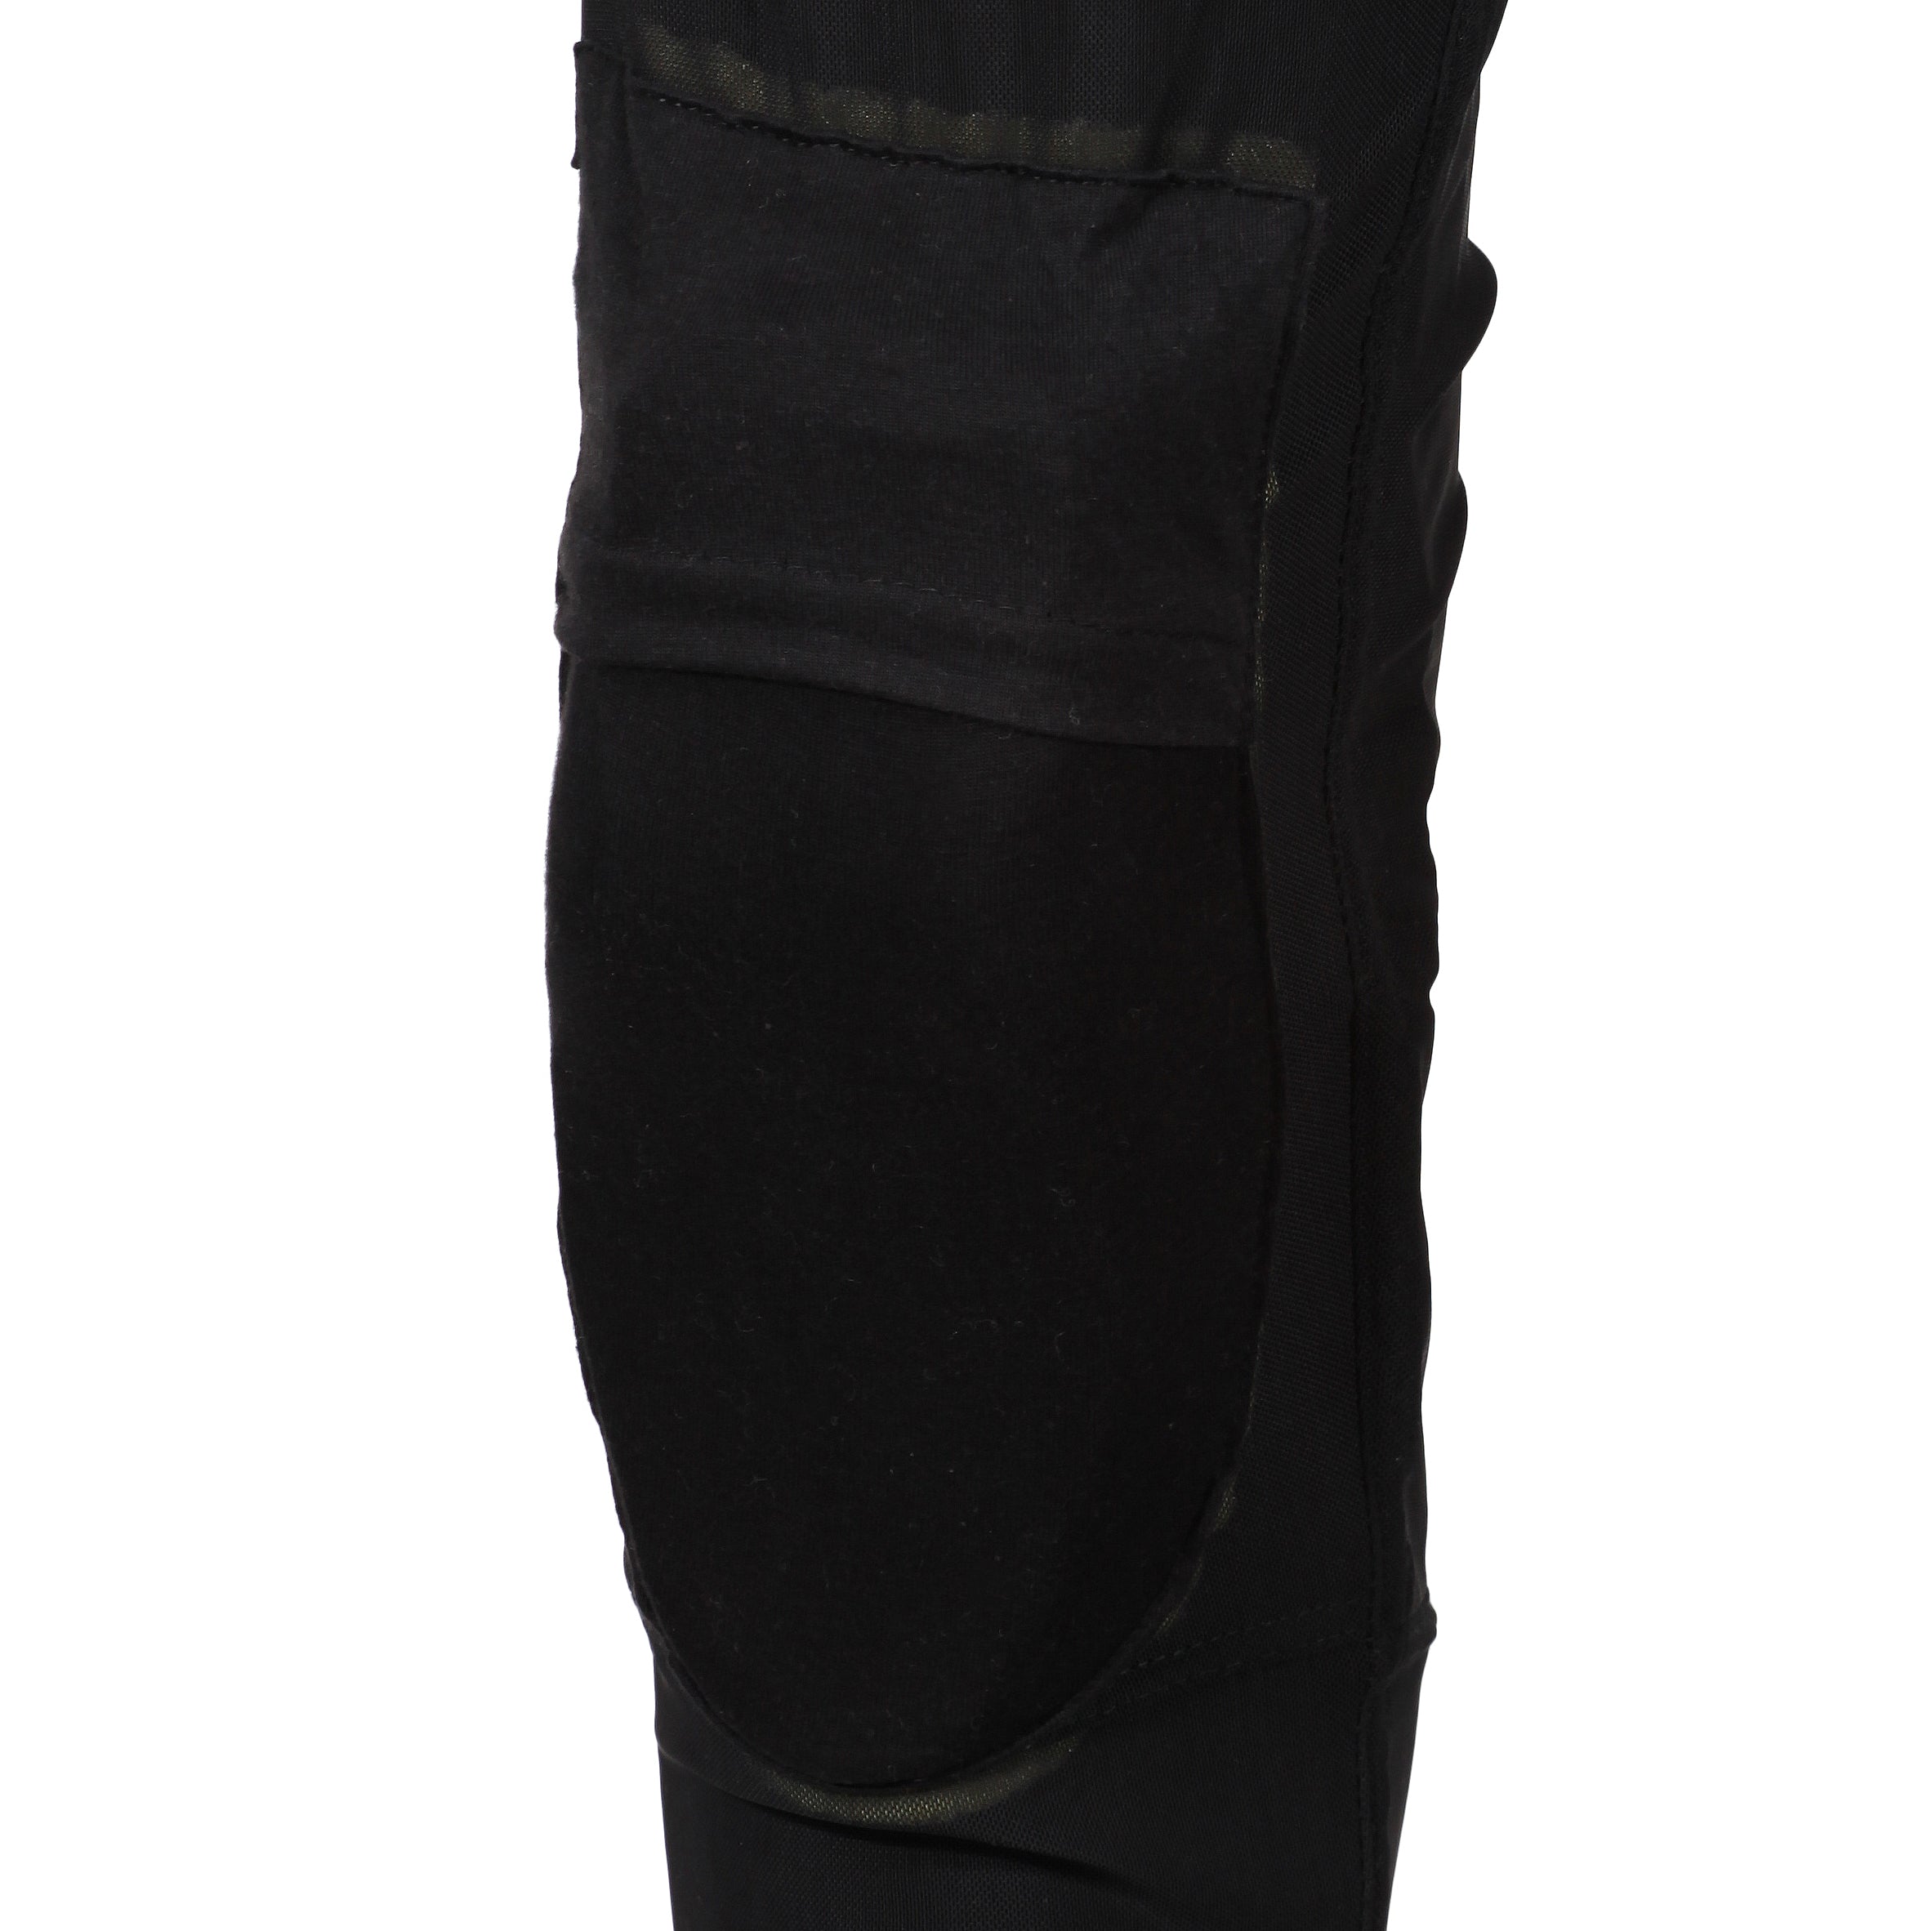 MotoGirl Sherrie Black Legging Regular - New! Fast Shipping!